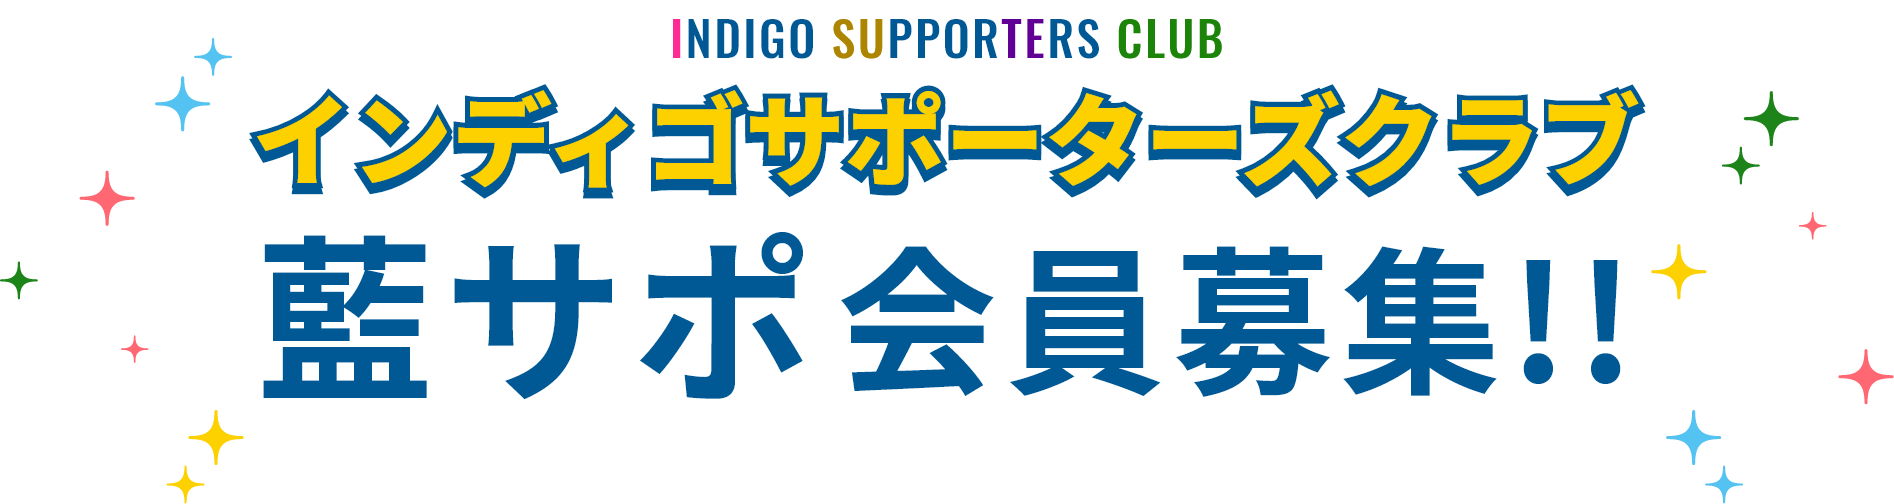 インディゴサポーターズクラブ藍サポ会員募集!!